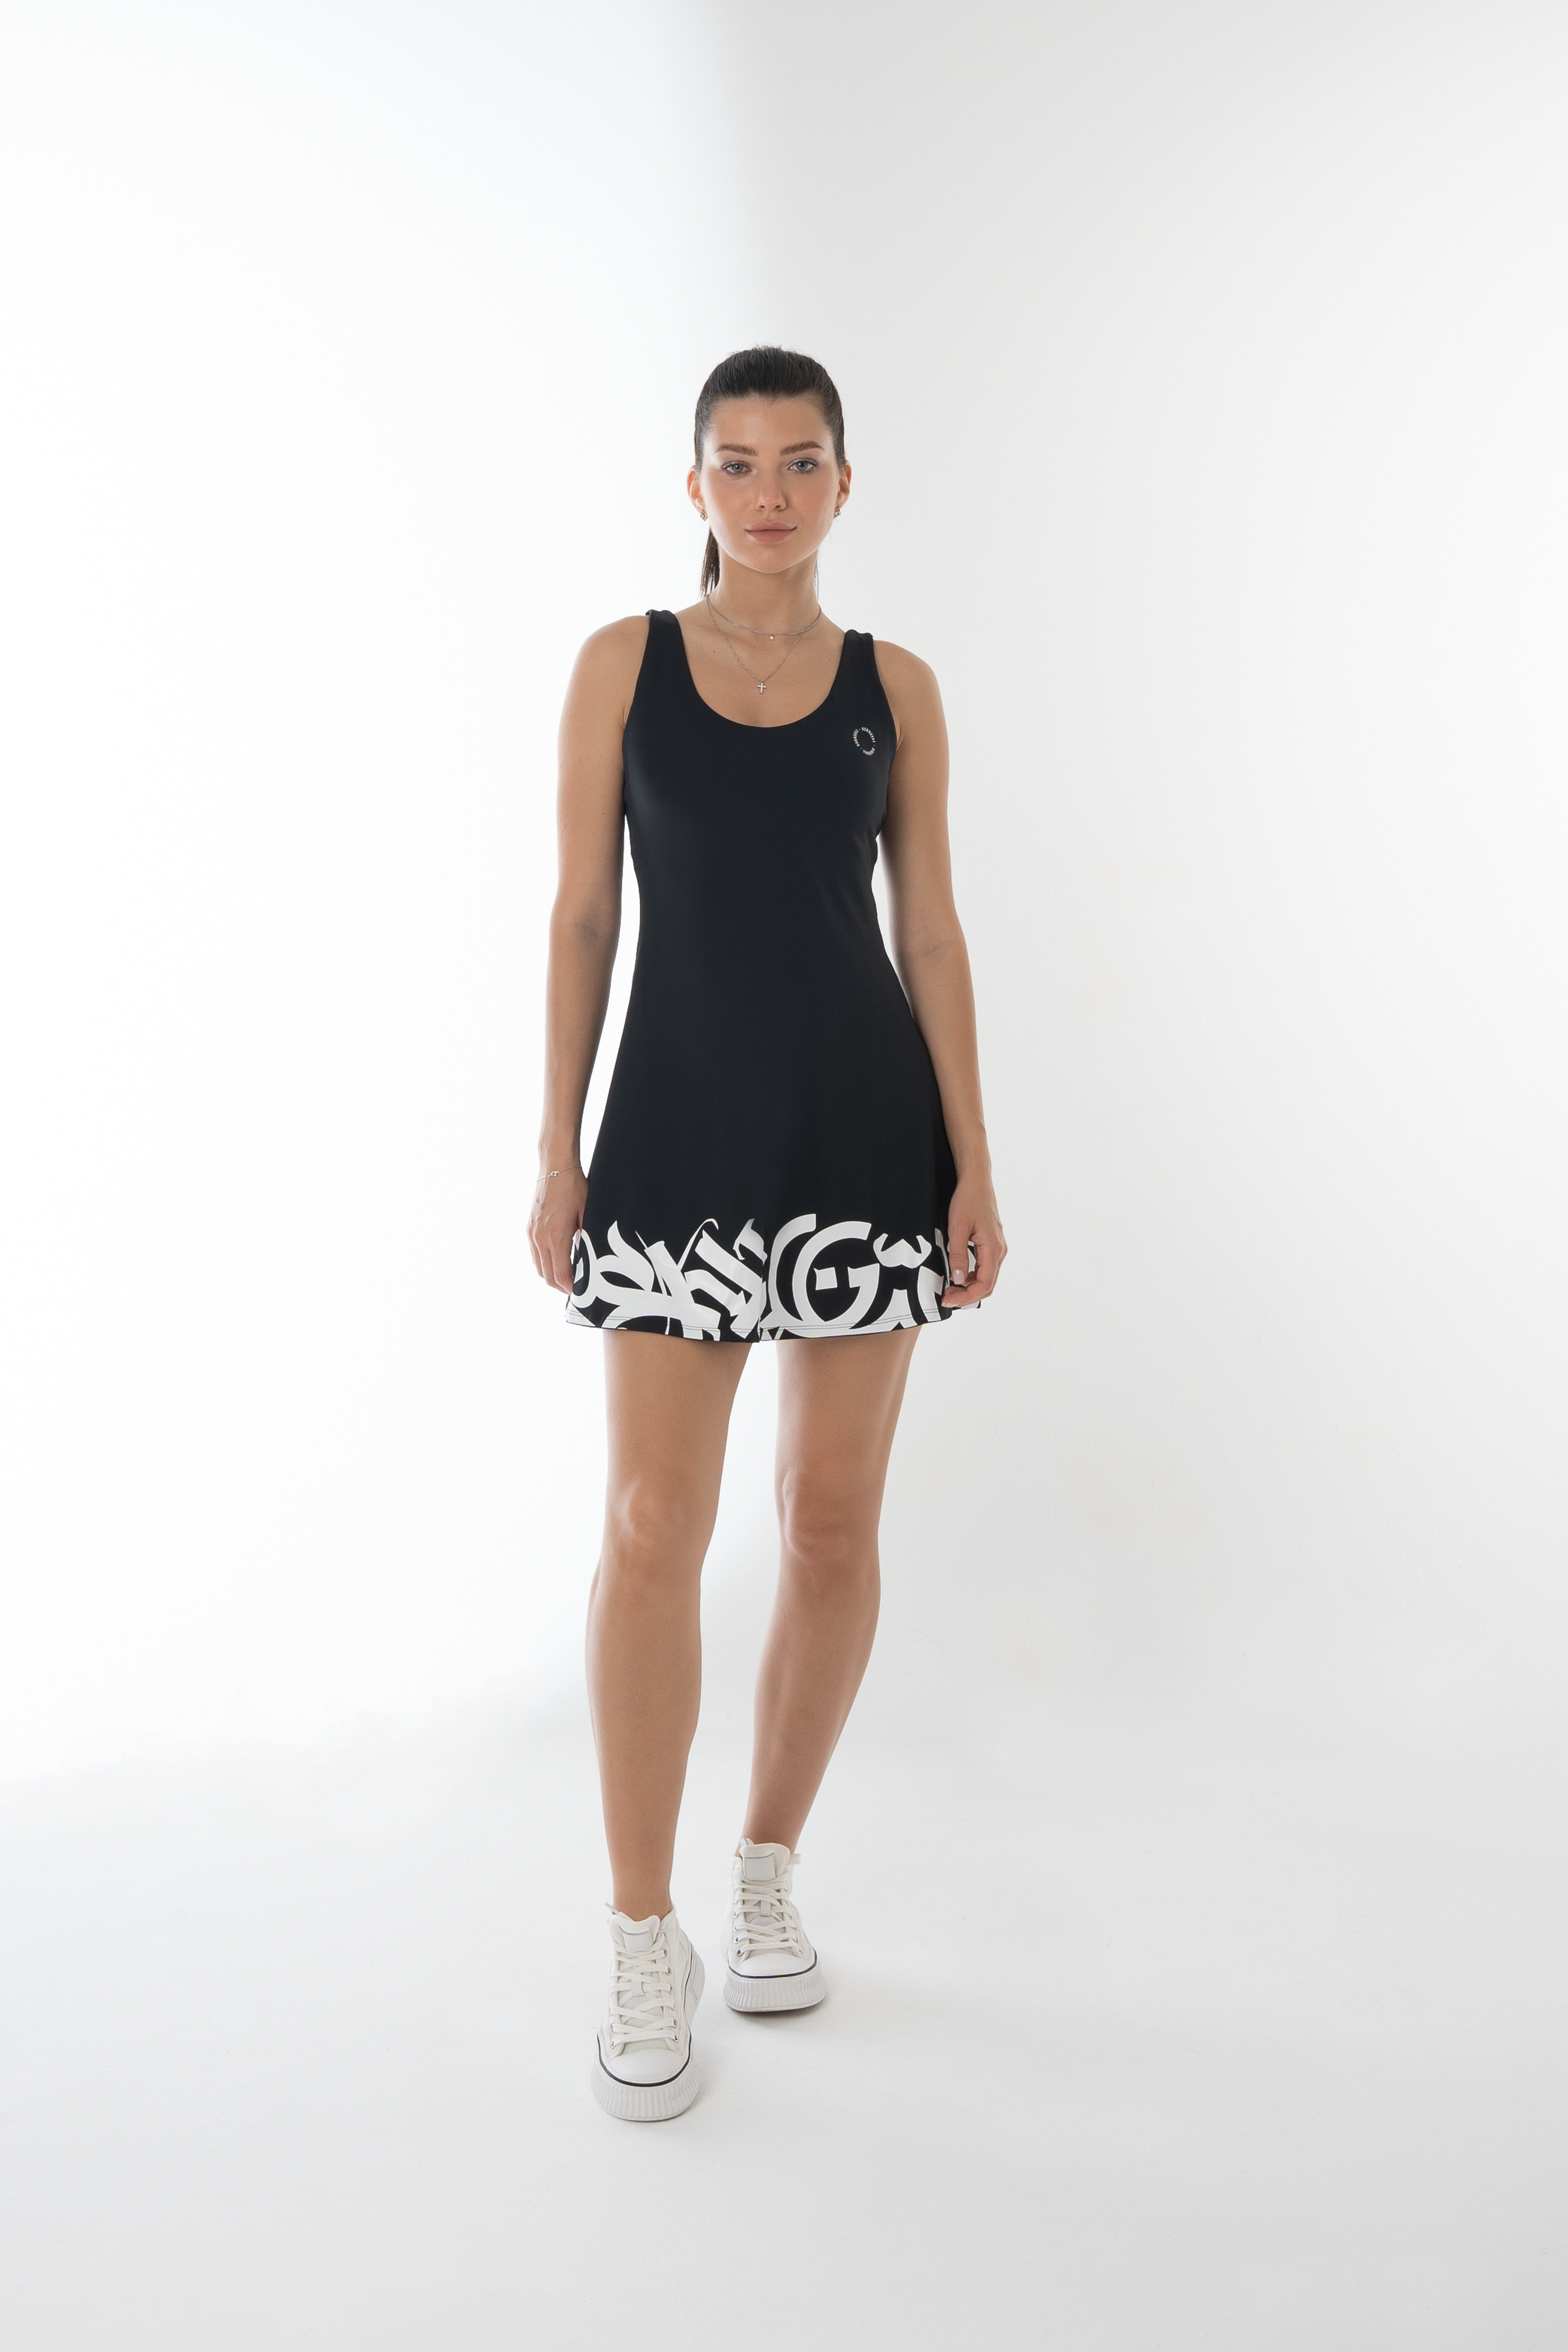 Bernessi Black Tennis Dress